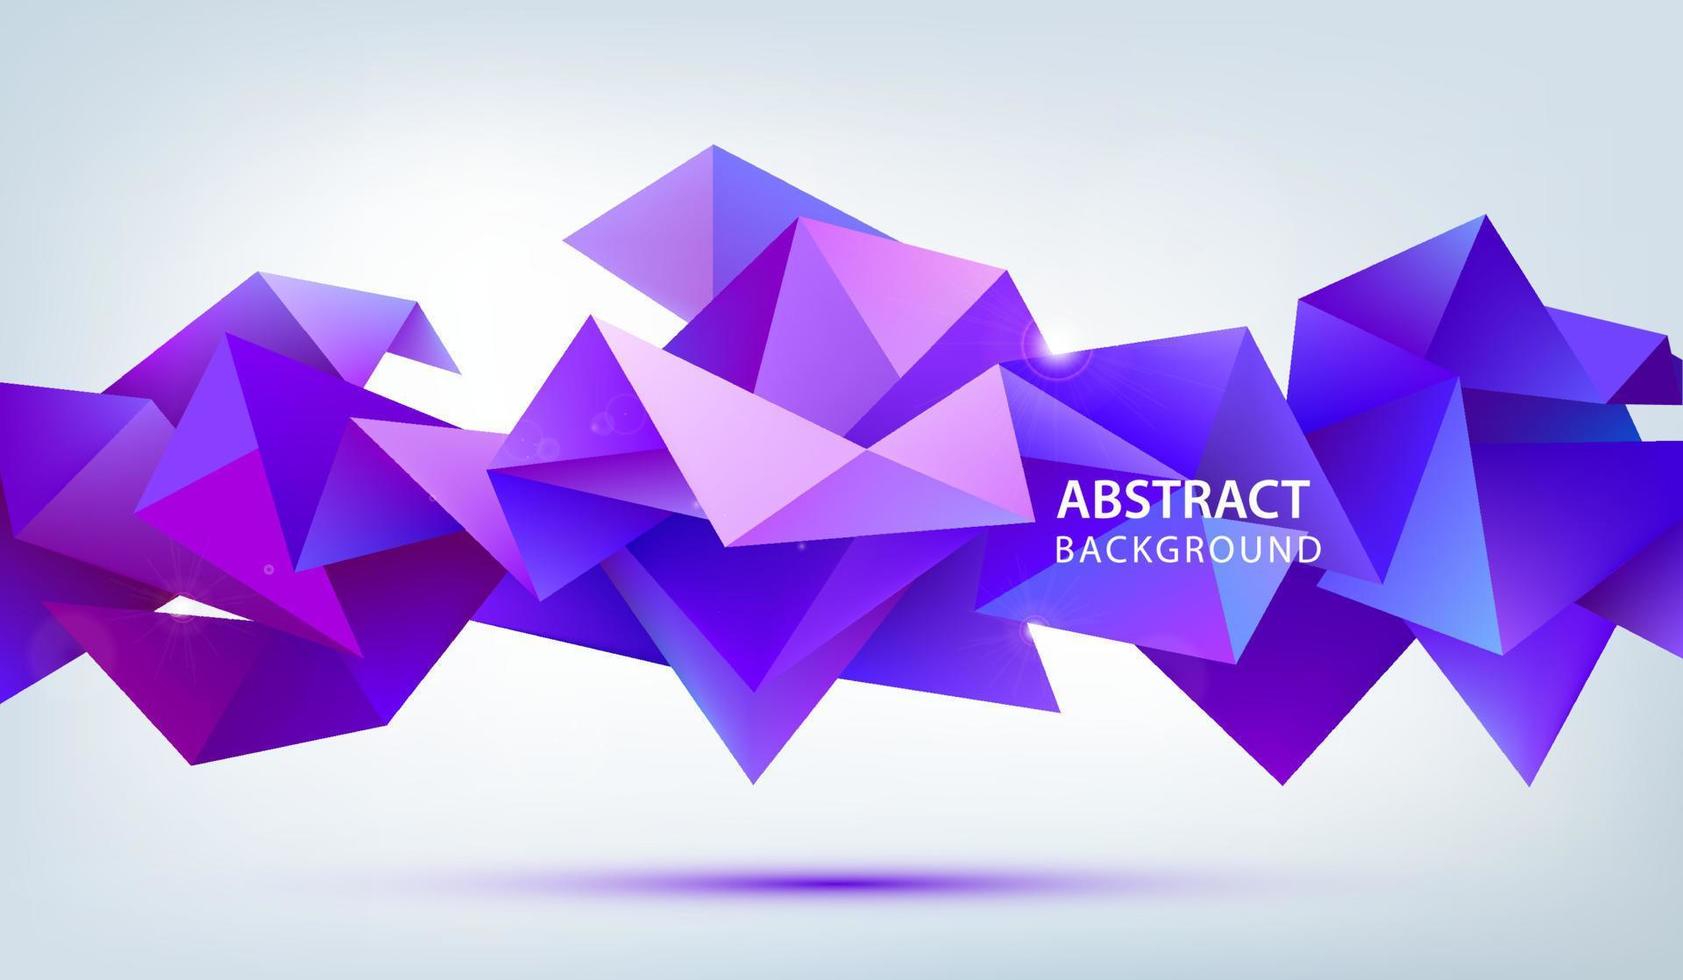 Vektor abstrakte geometrische 3D-Facettenform isoliert, Kristall, Origami-Stil. Verwendung für Banner, Web, Broschüren, Anzeigen, Poster usw. Low-Poly-moderner Hintergrund.